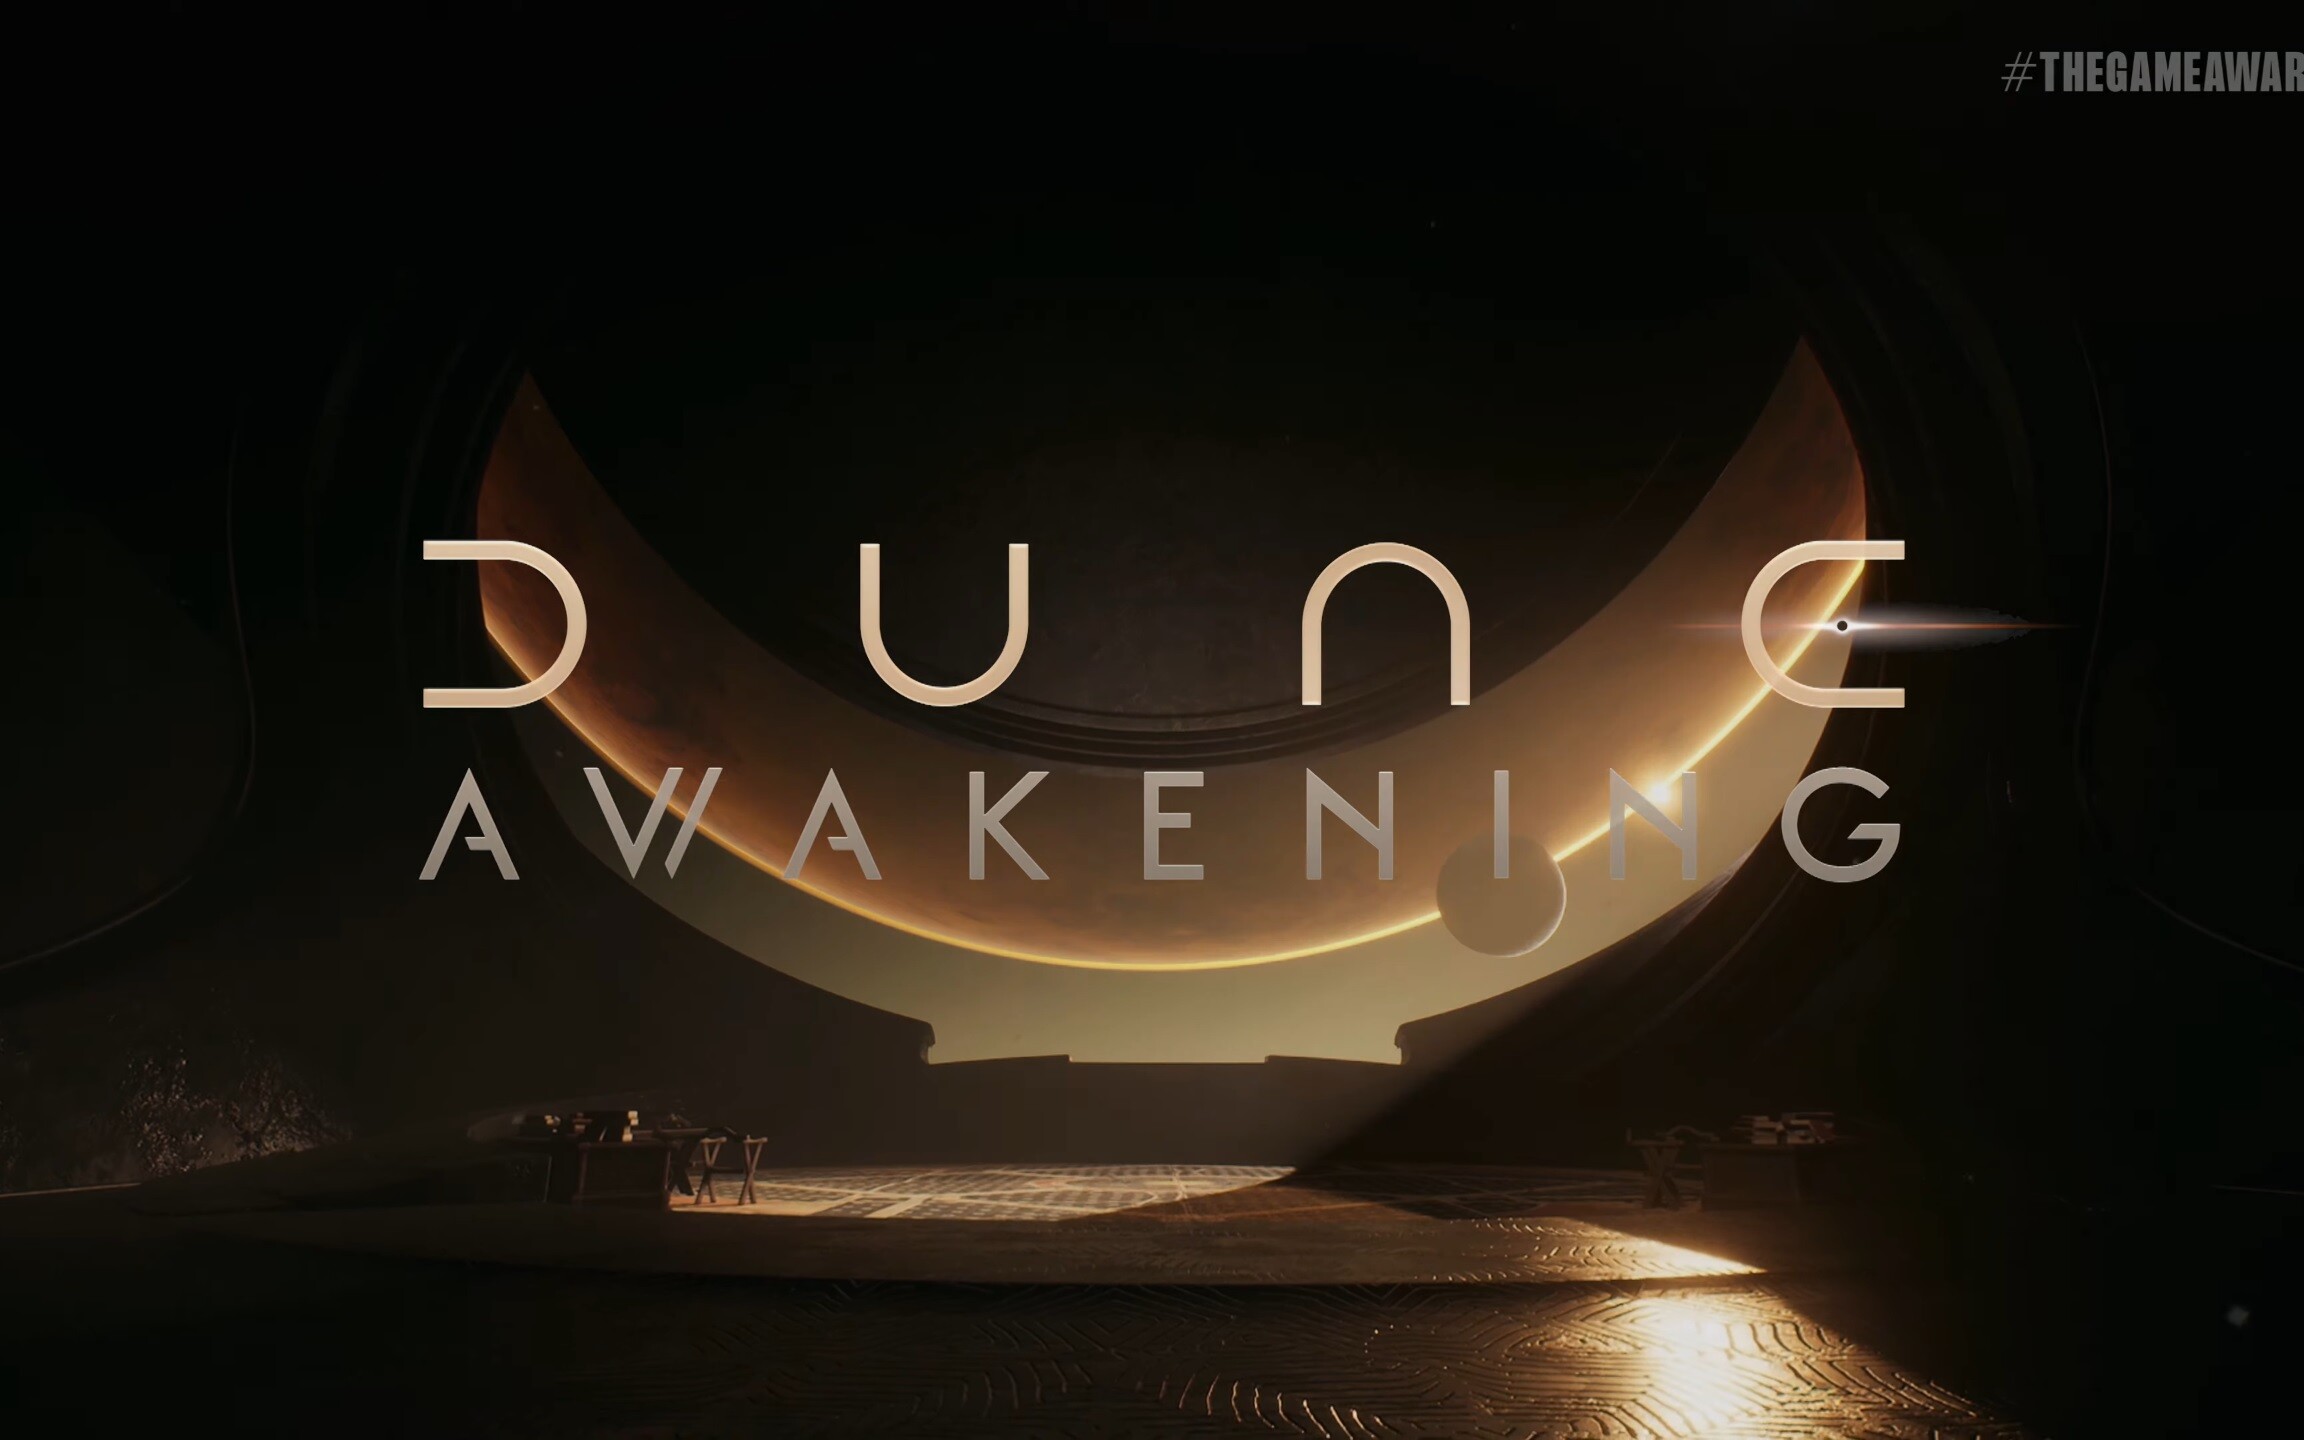 Dune Awakening